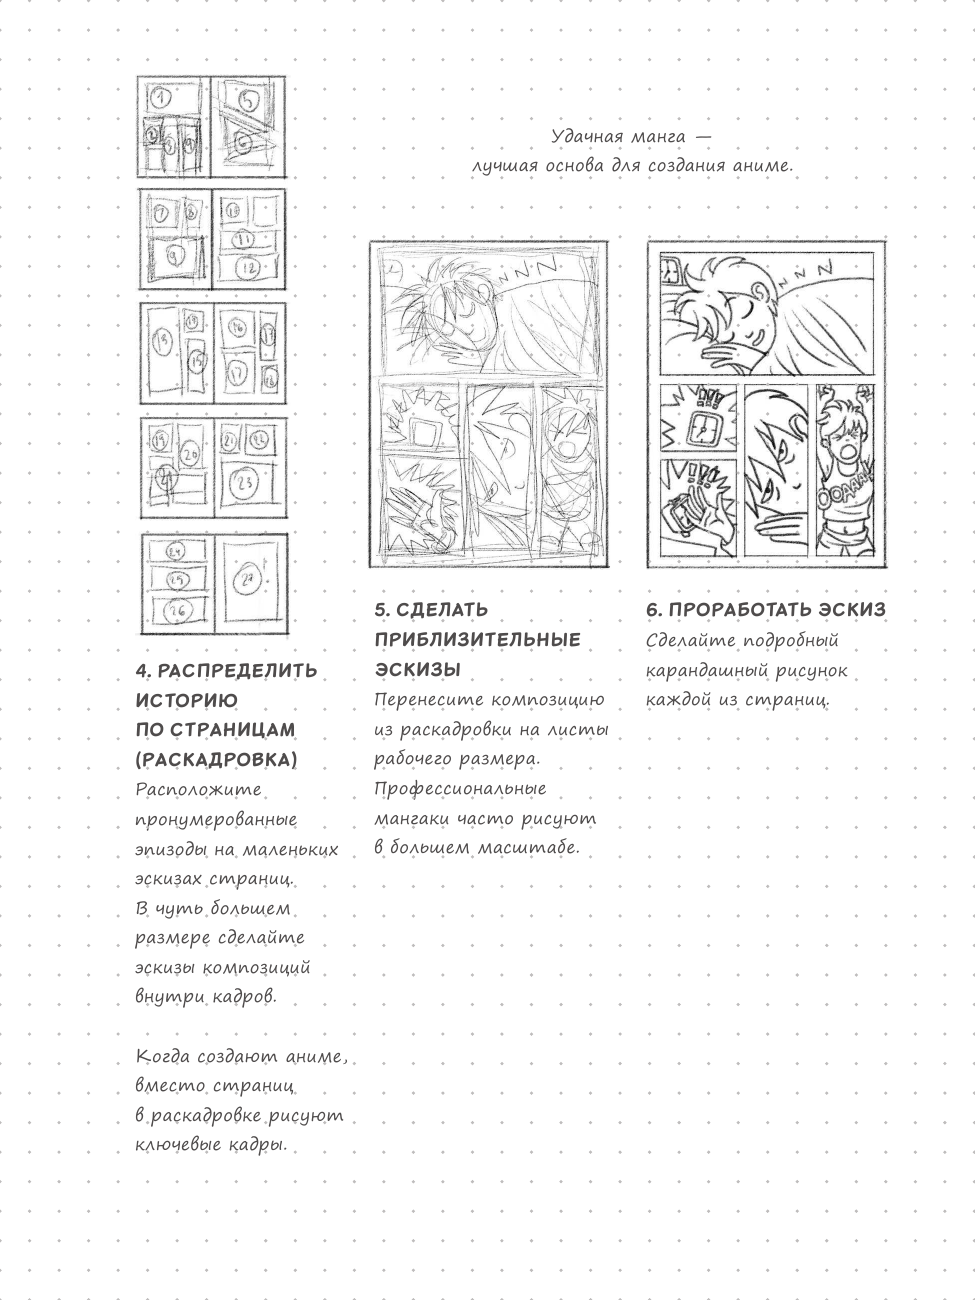 Sketchbook. Рисуем мангу и аниме - фото №11